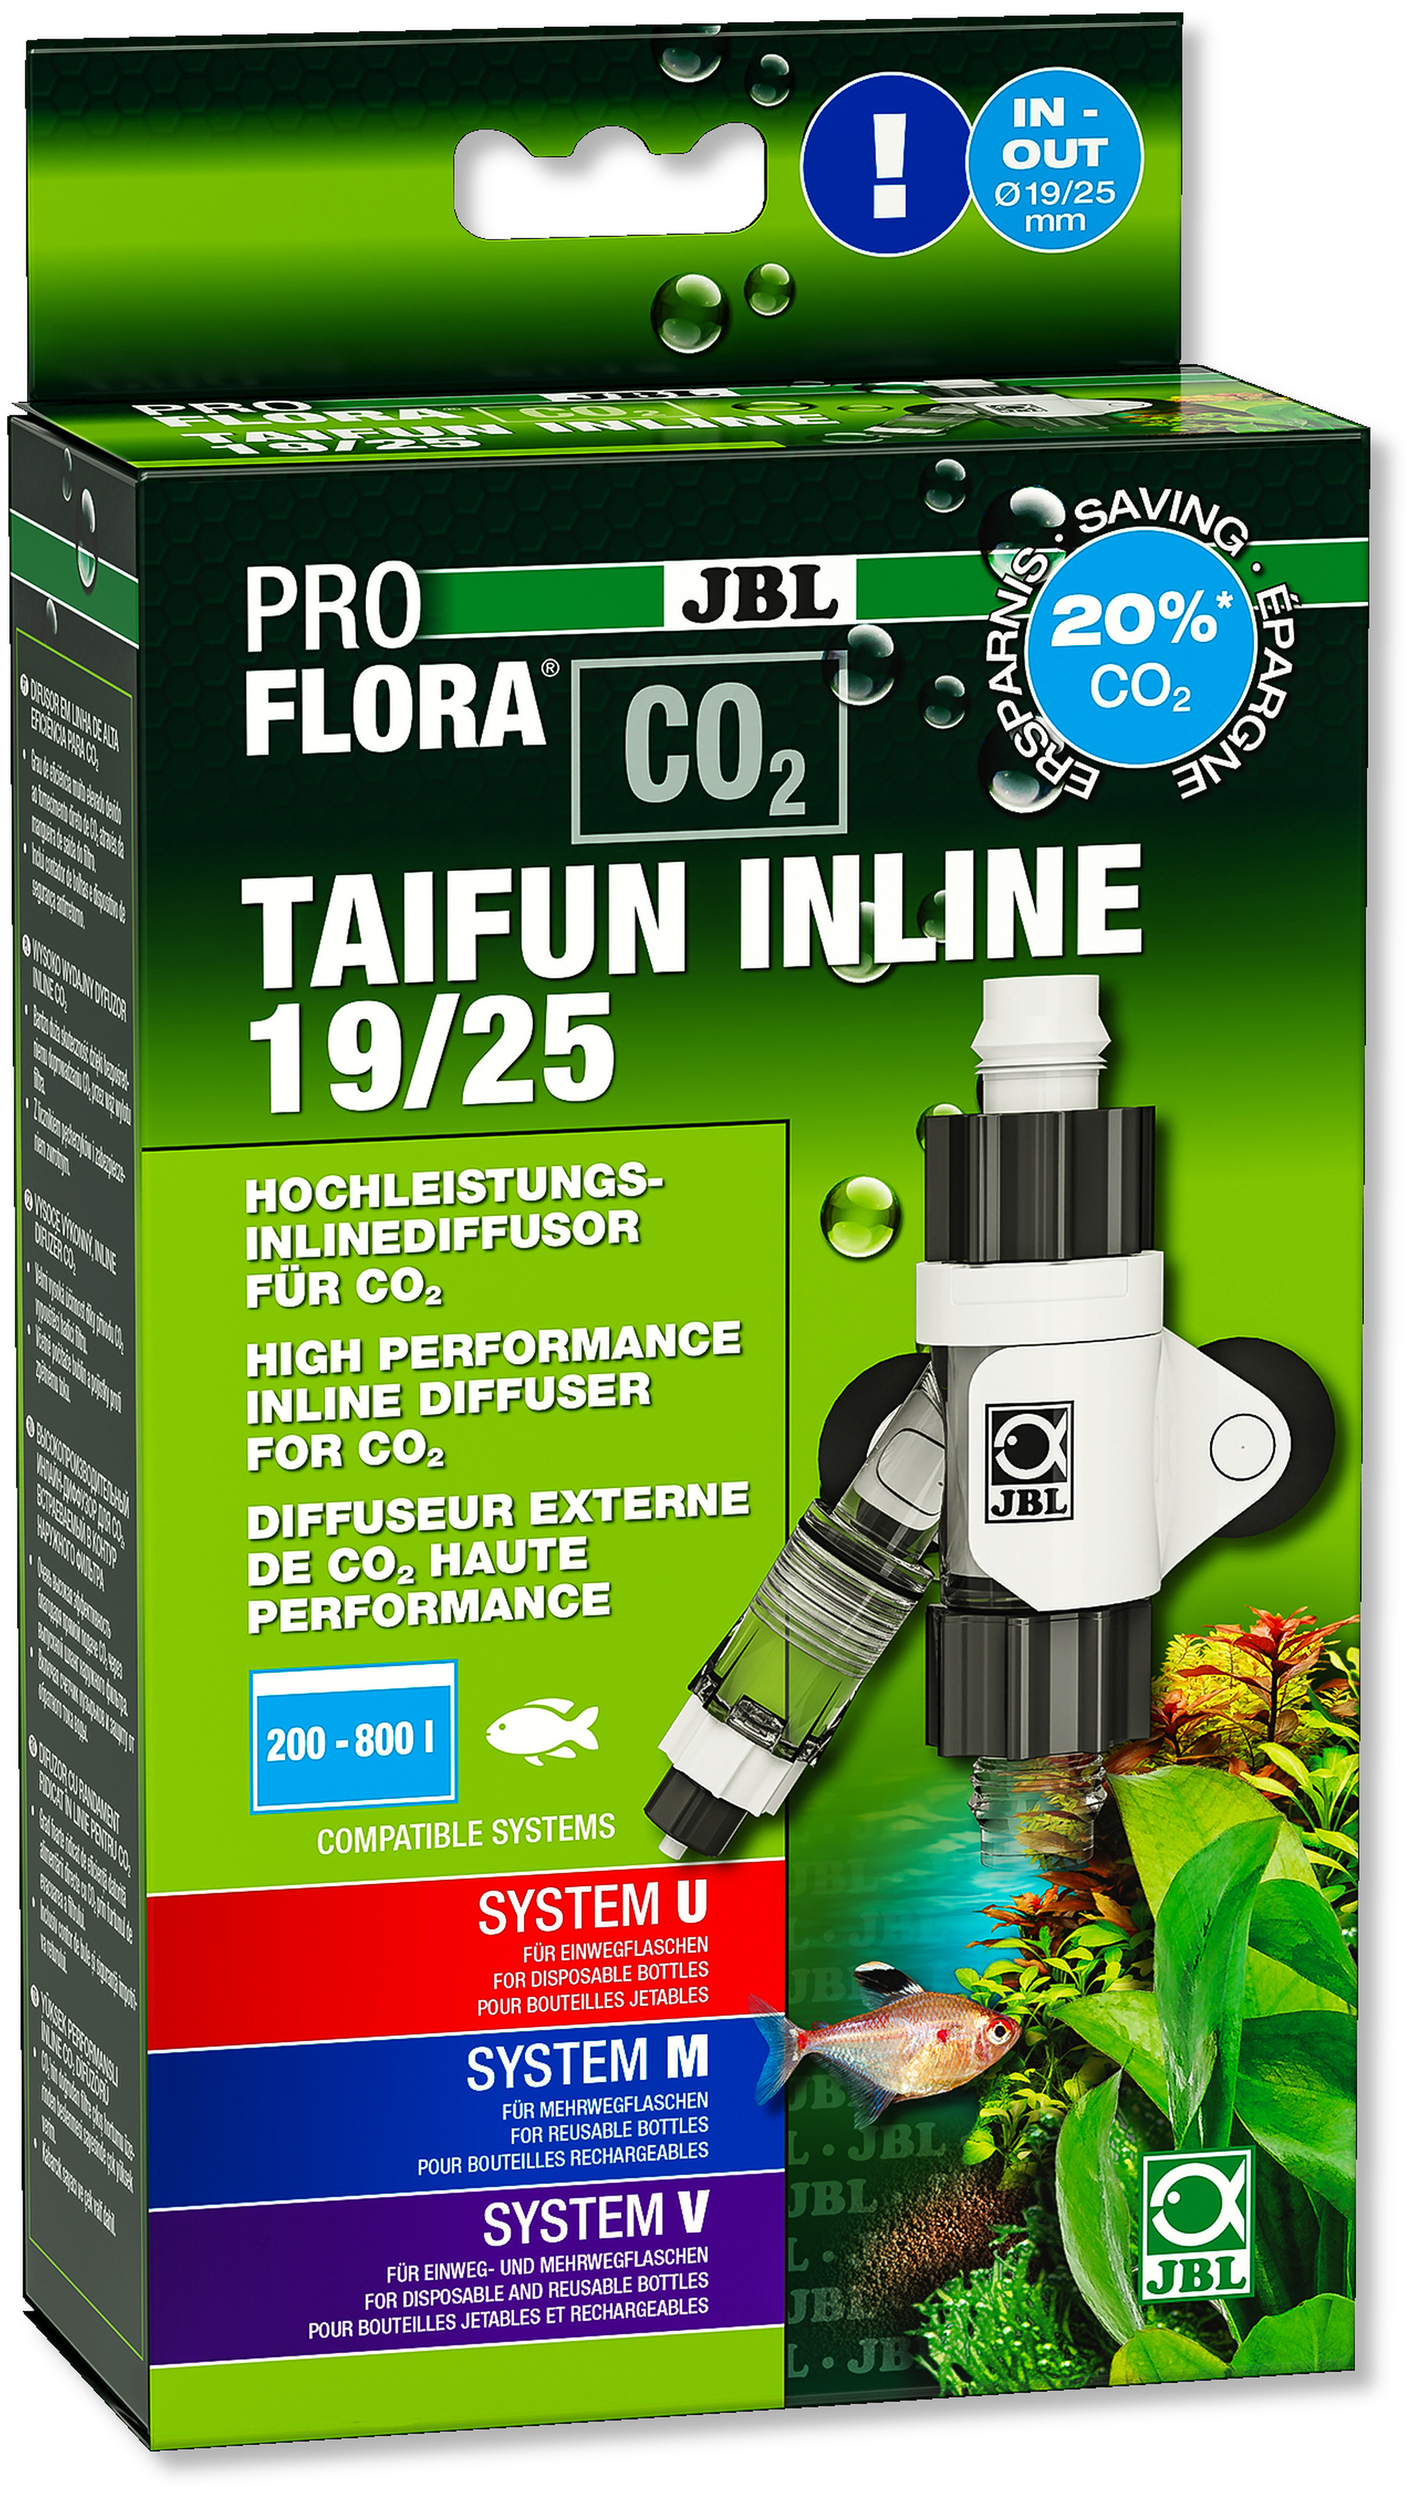 JBL Proflora CO2 Taifun Inline 19/25 diffuseur de CO2 pour filtre externe avec tuyau 19/25 mm pour aquarium de 200 à 800 L